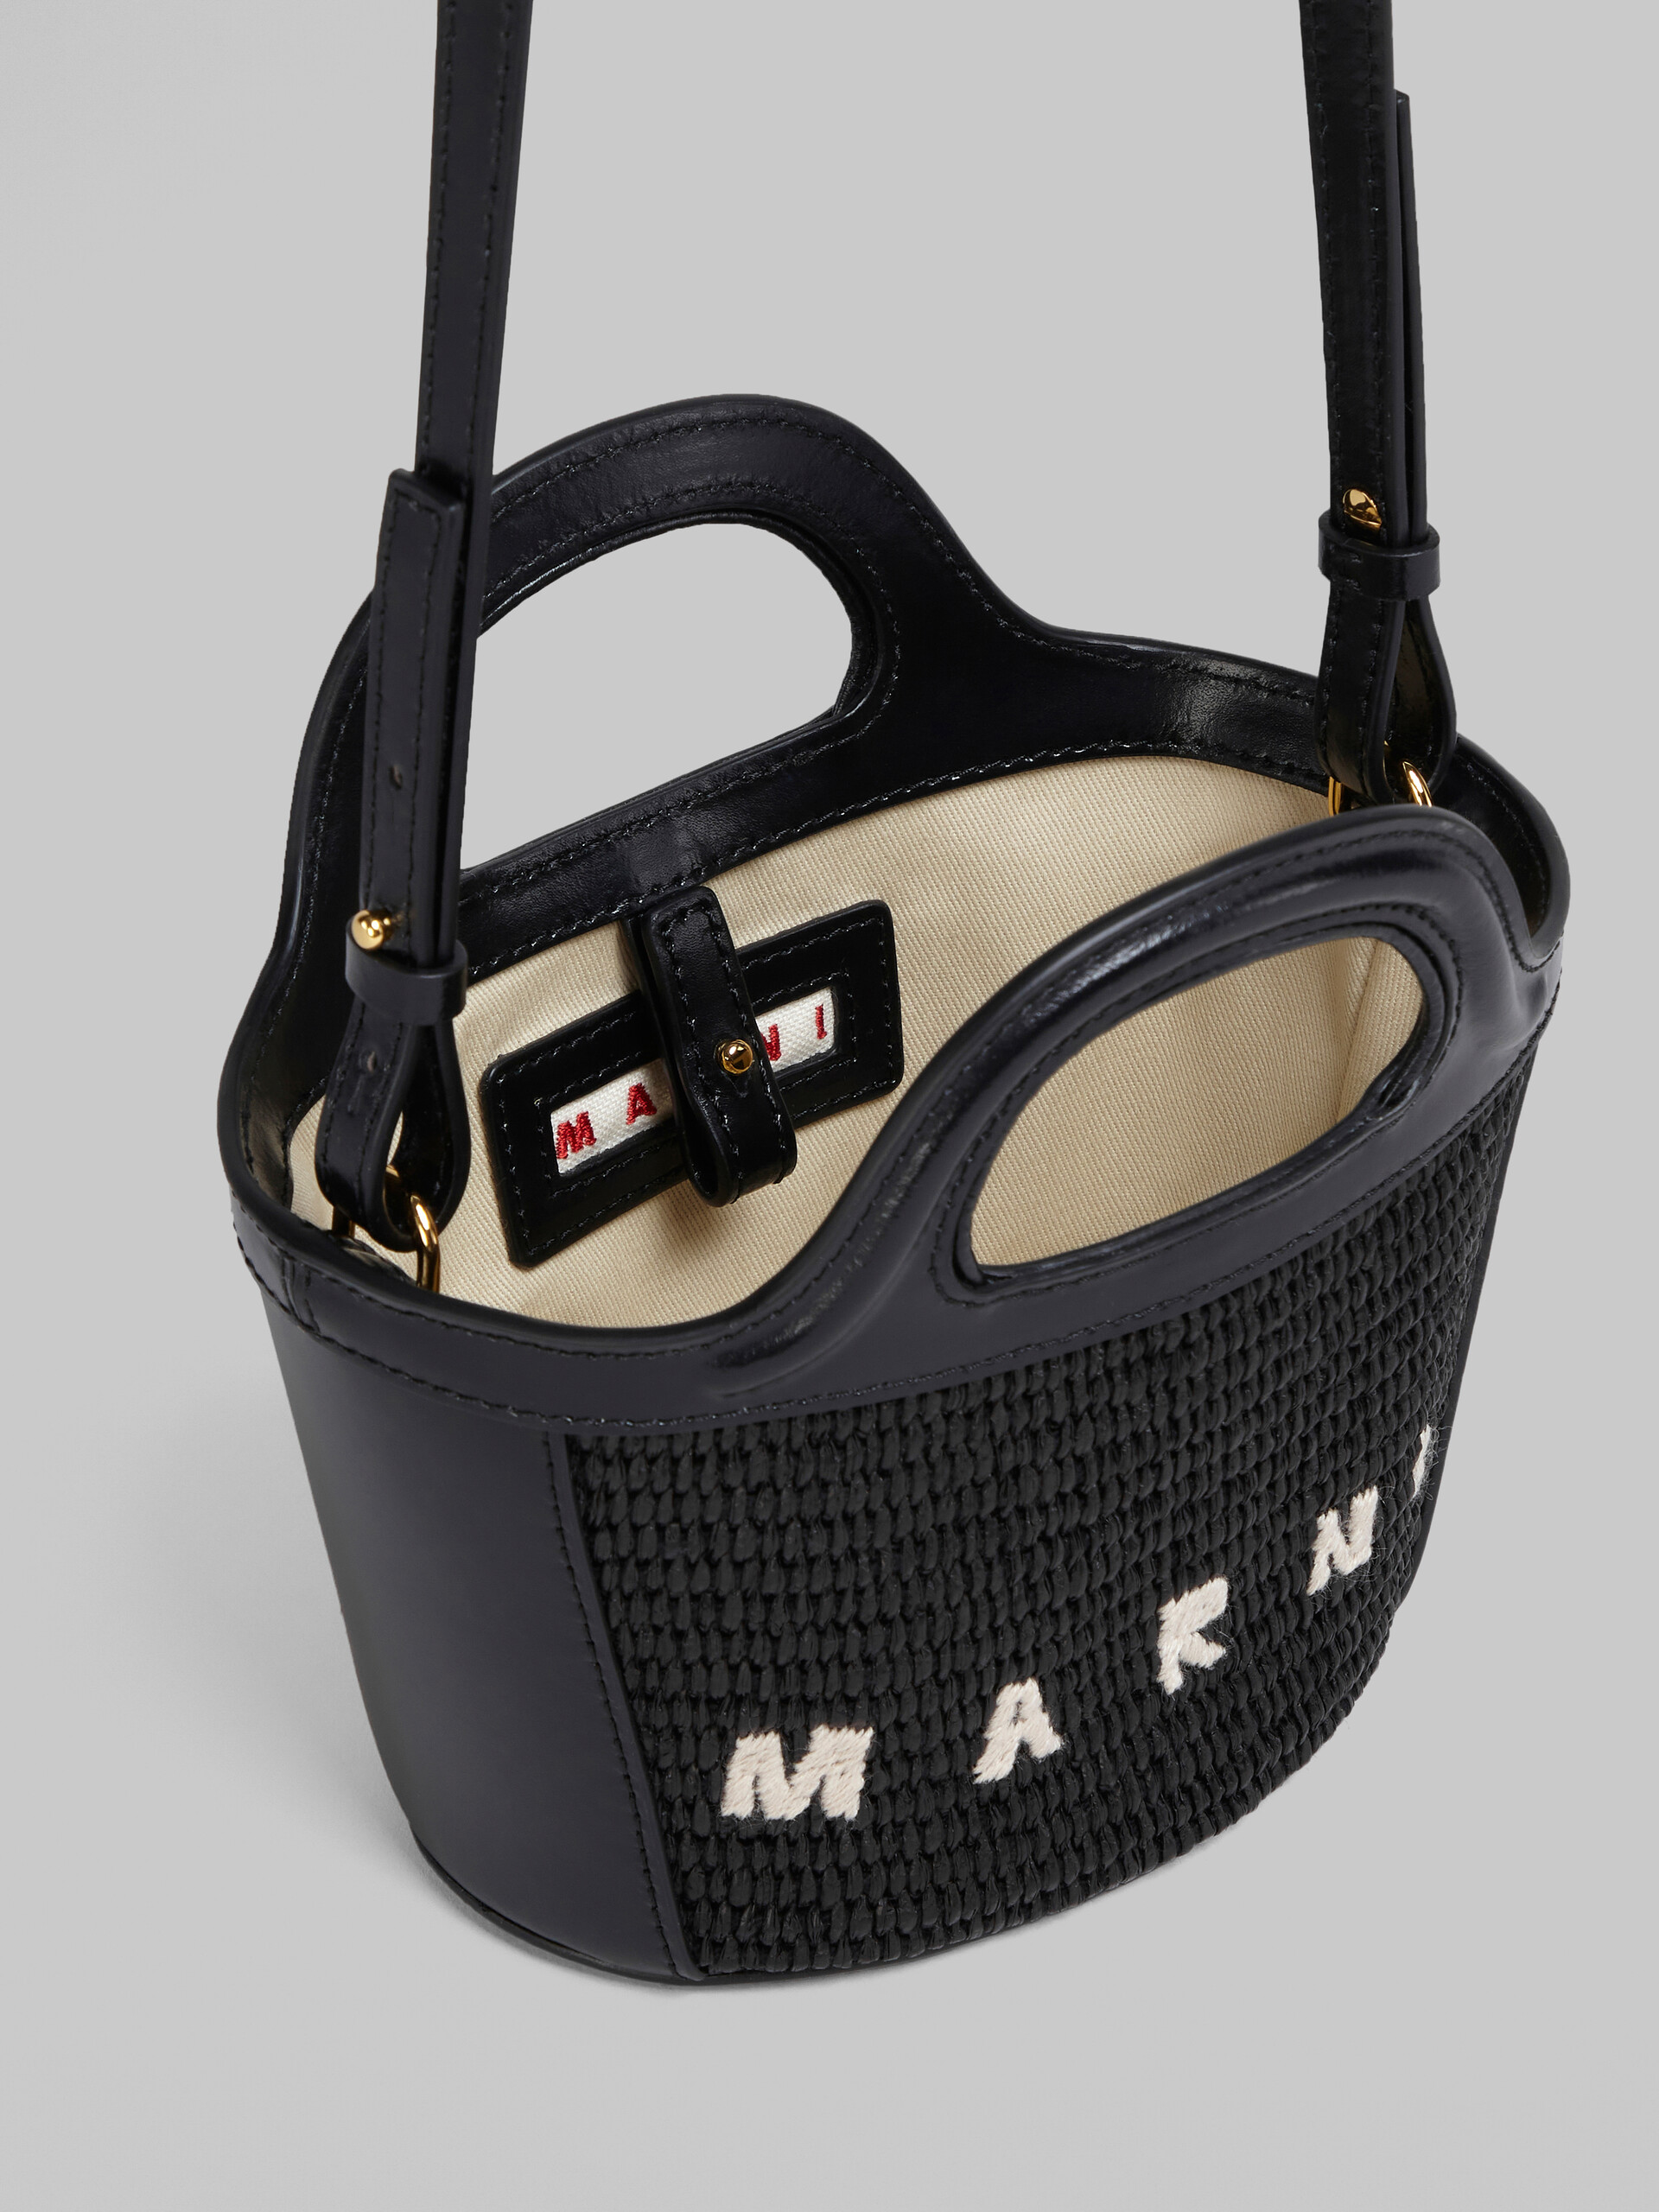 【MARNI】2WAY Bag Basket Bag TROPICALIA MICRO BMMP0067Q0 P3860